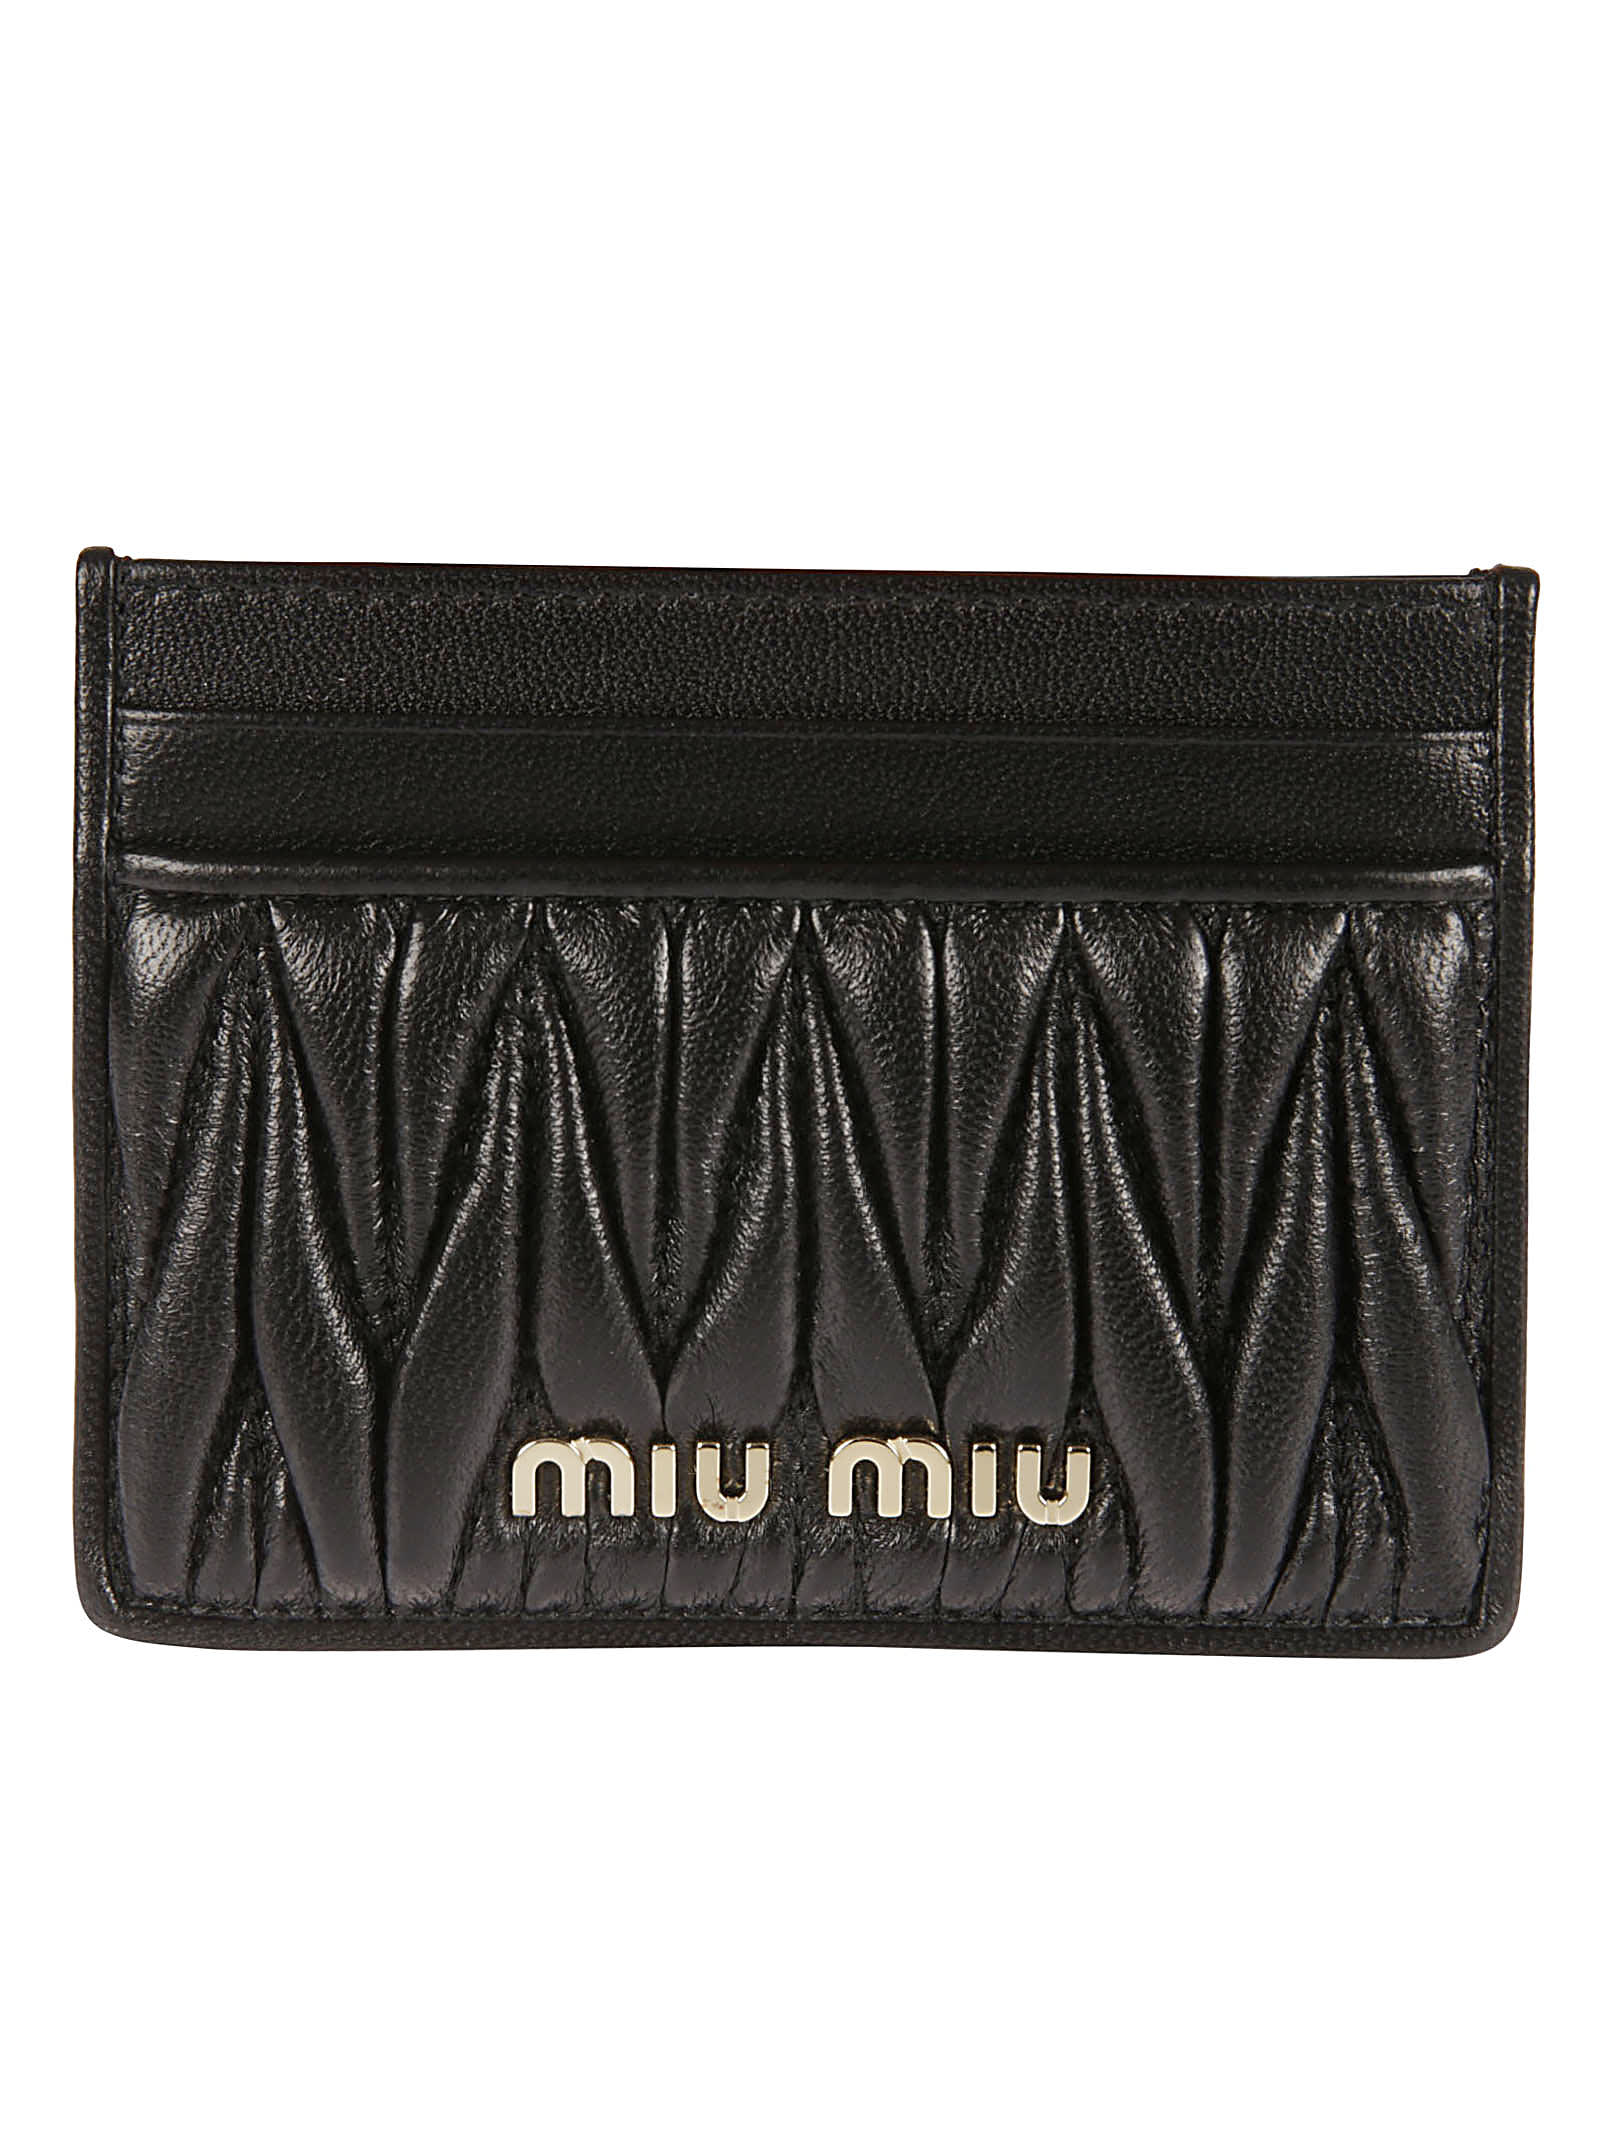 MIU MIU Wallets for Women | ModeSens